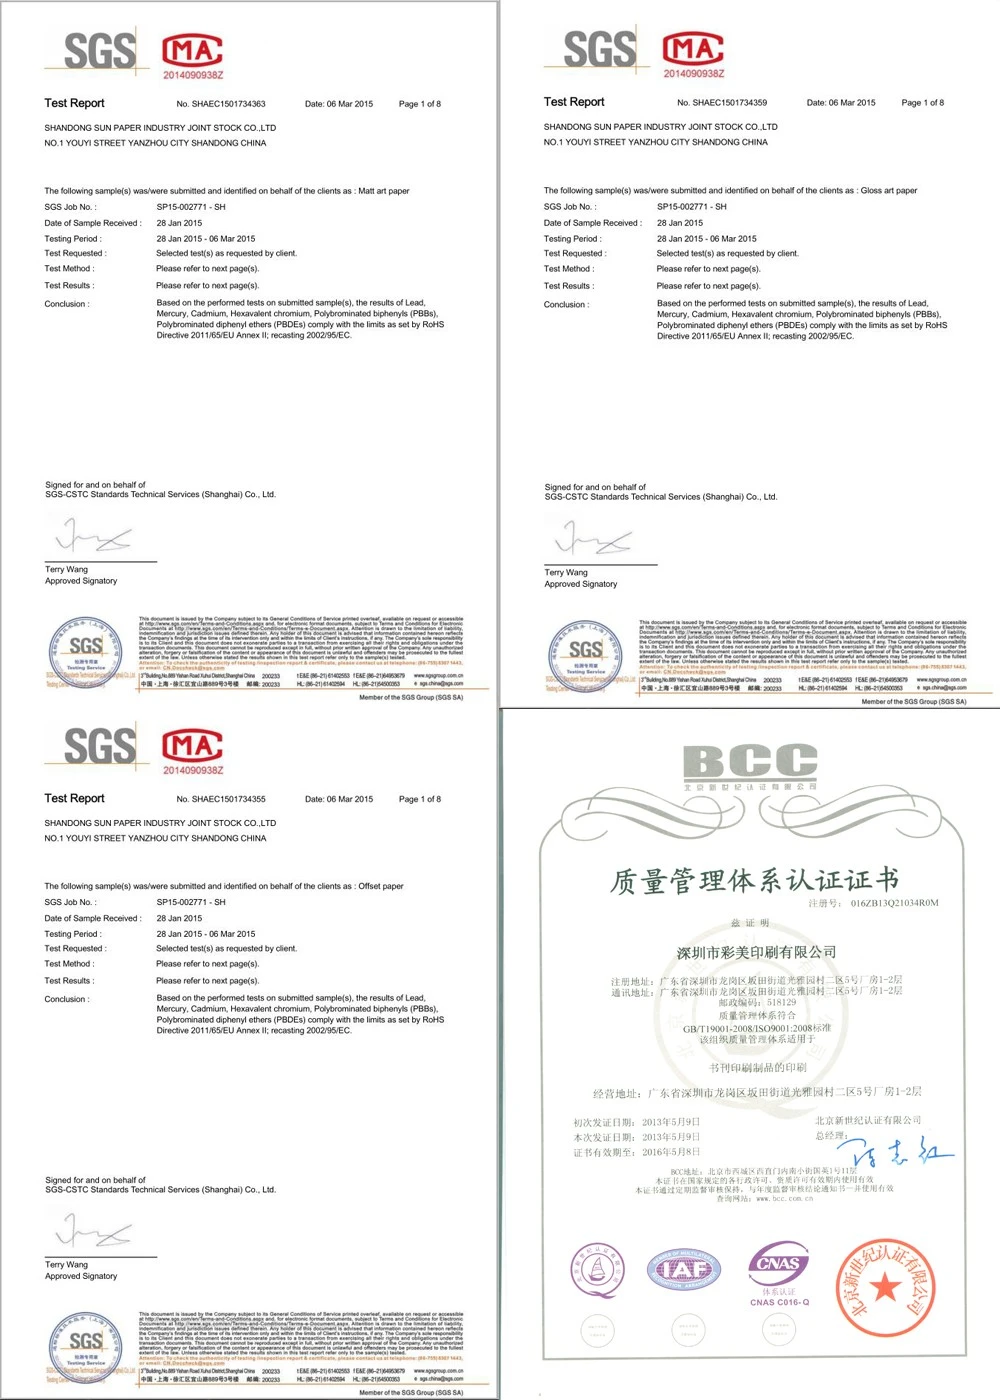 comic book paper printing certificates